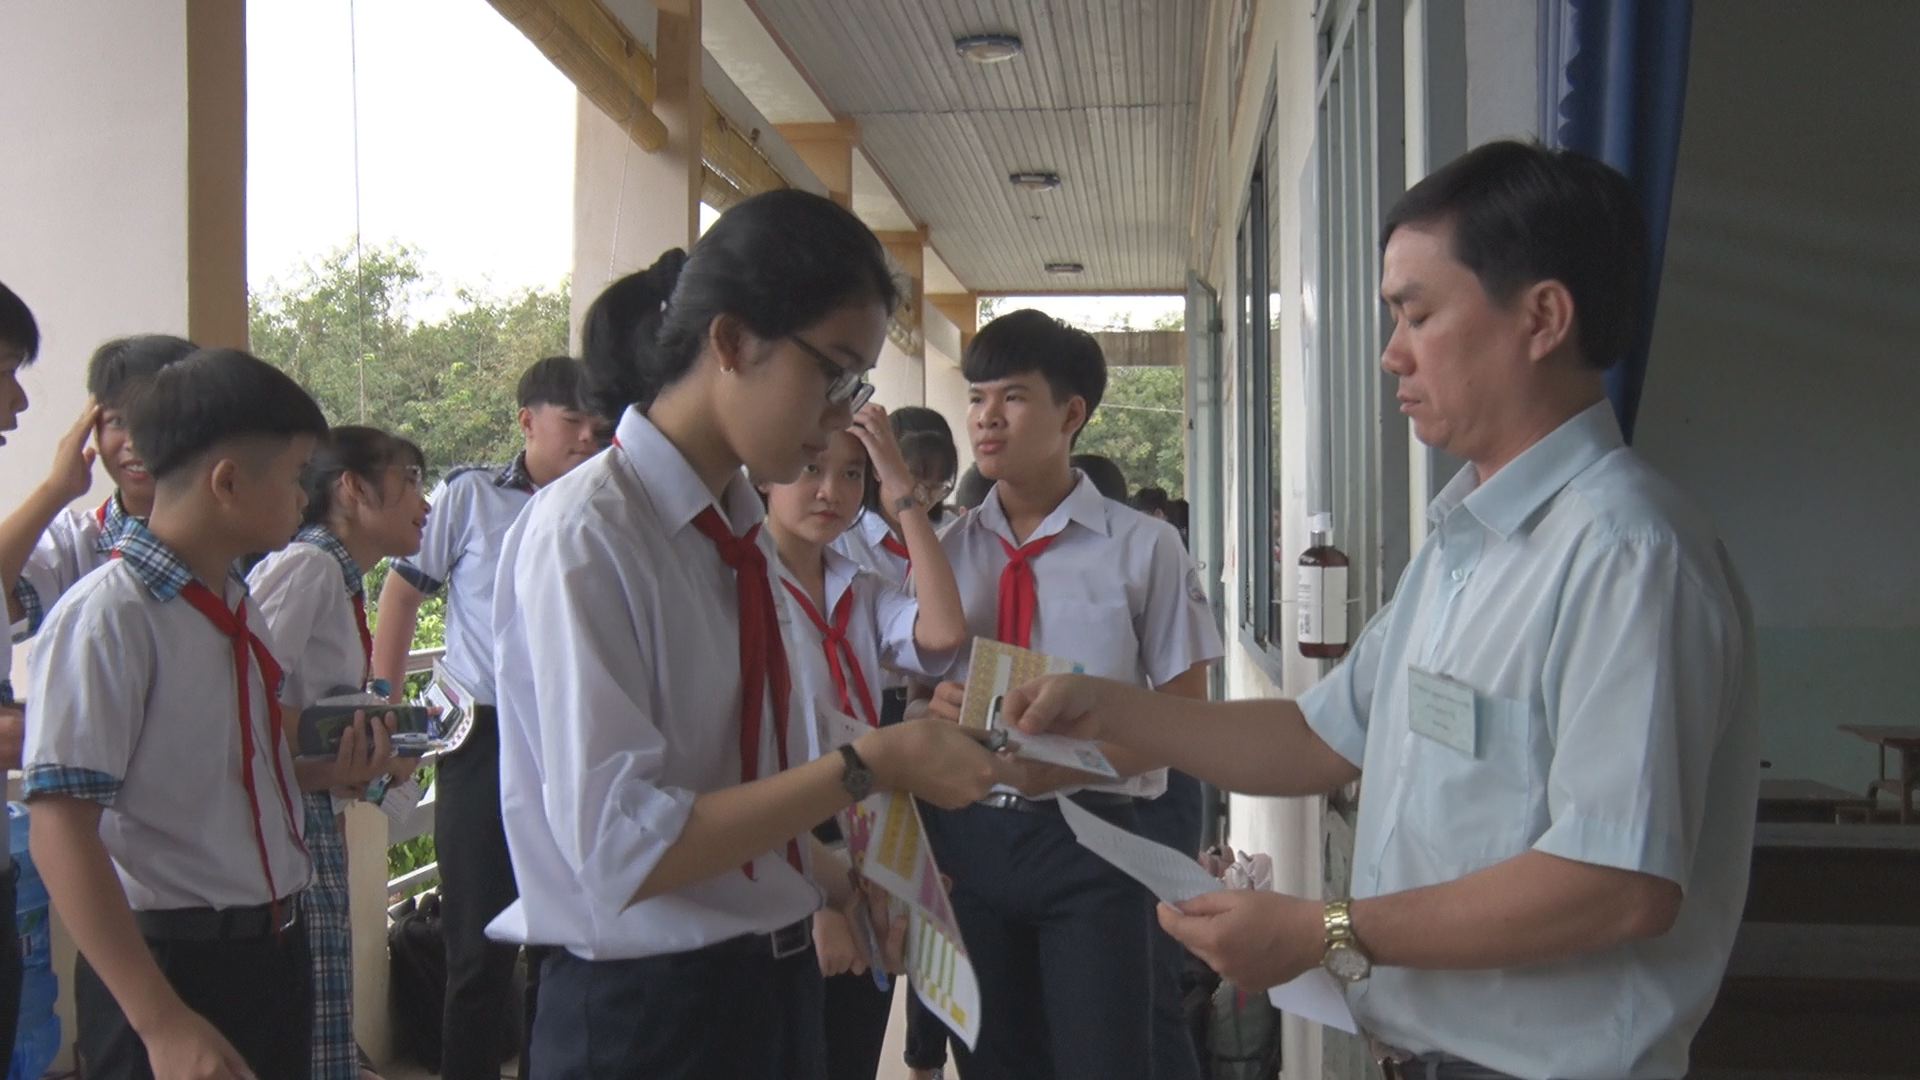 Dương Minh Châu Khai mạc Kỳ thi chọn Học sinh giỏi vòng huyện năm học 2020 - 2021